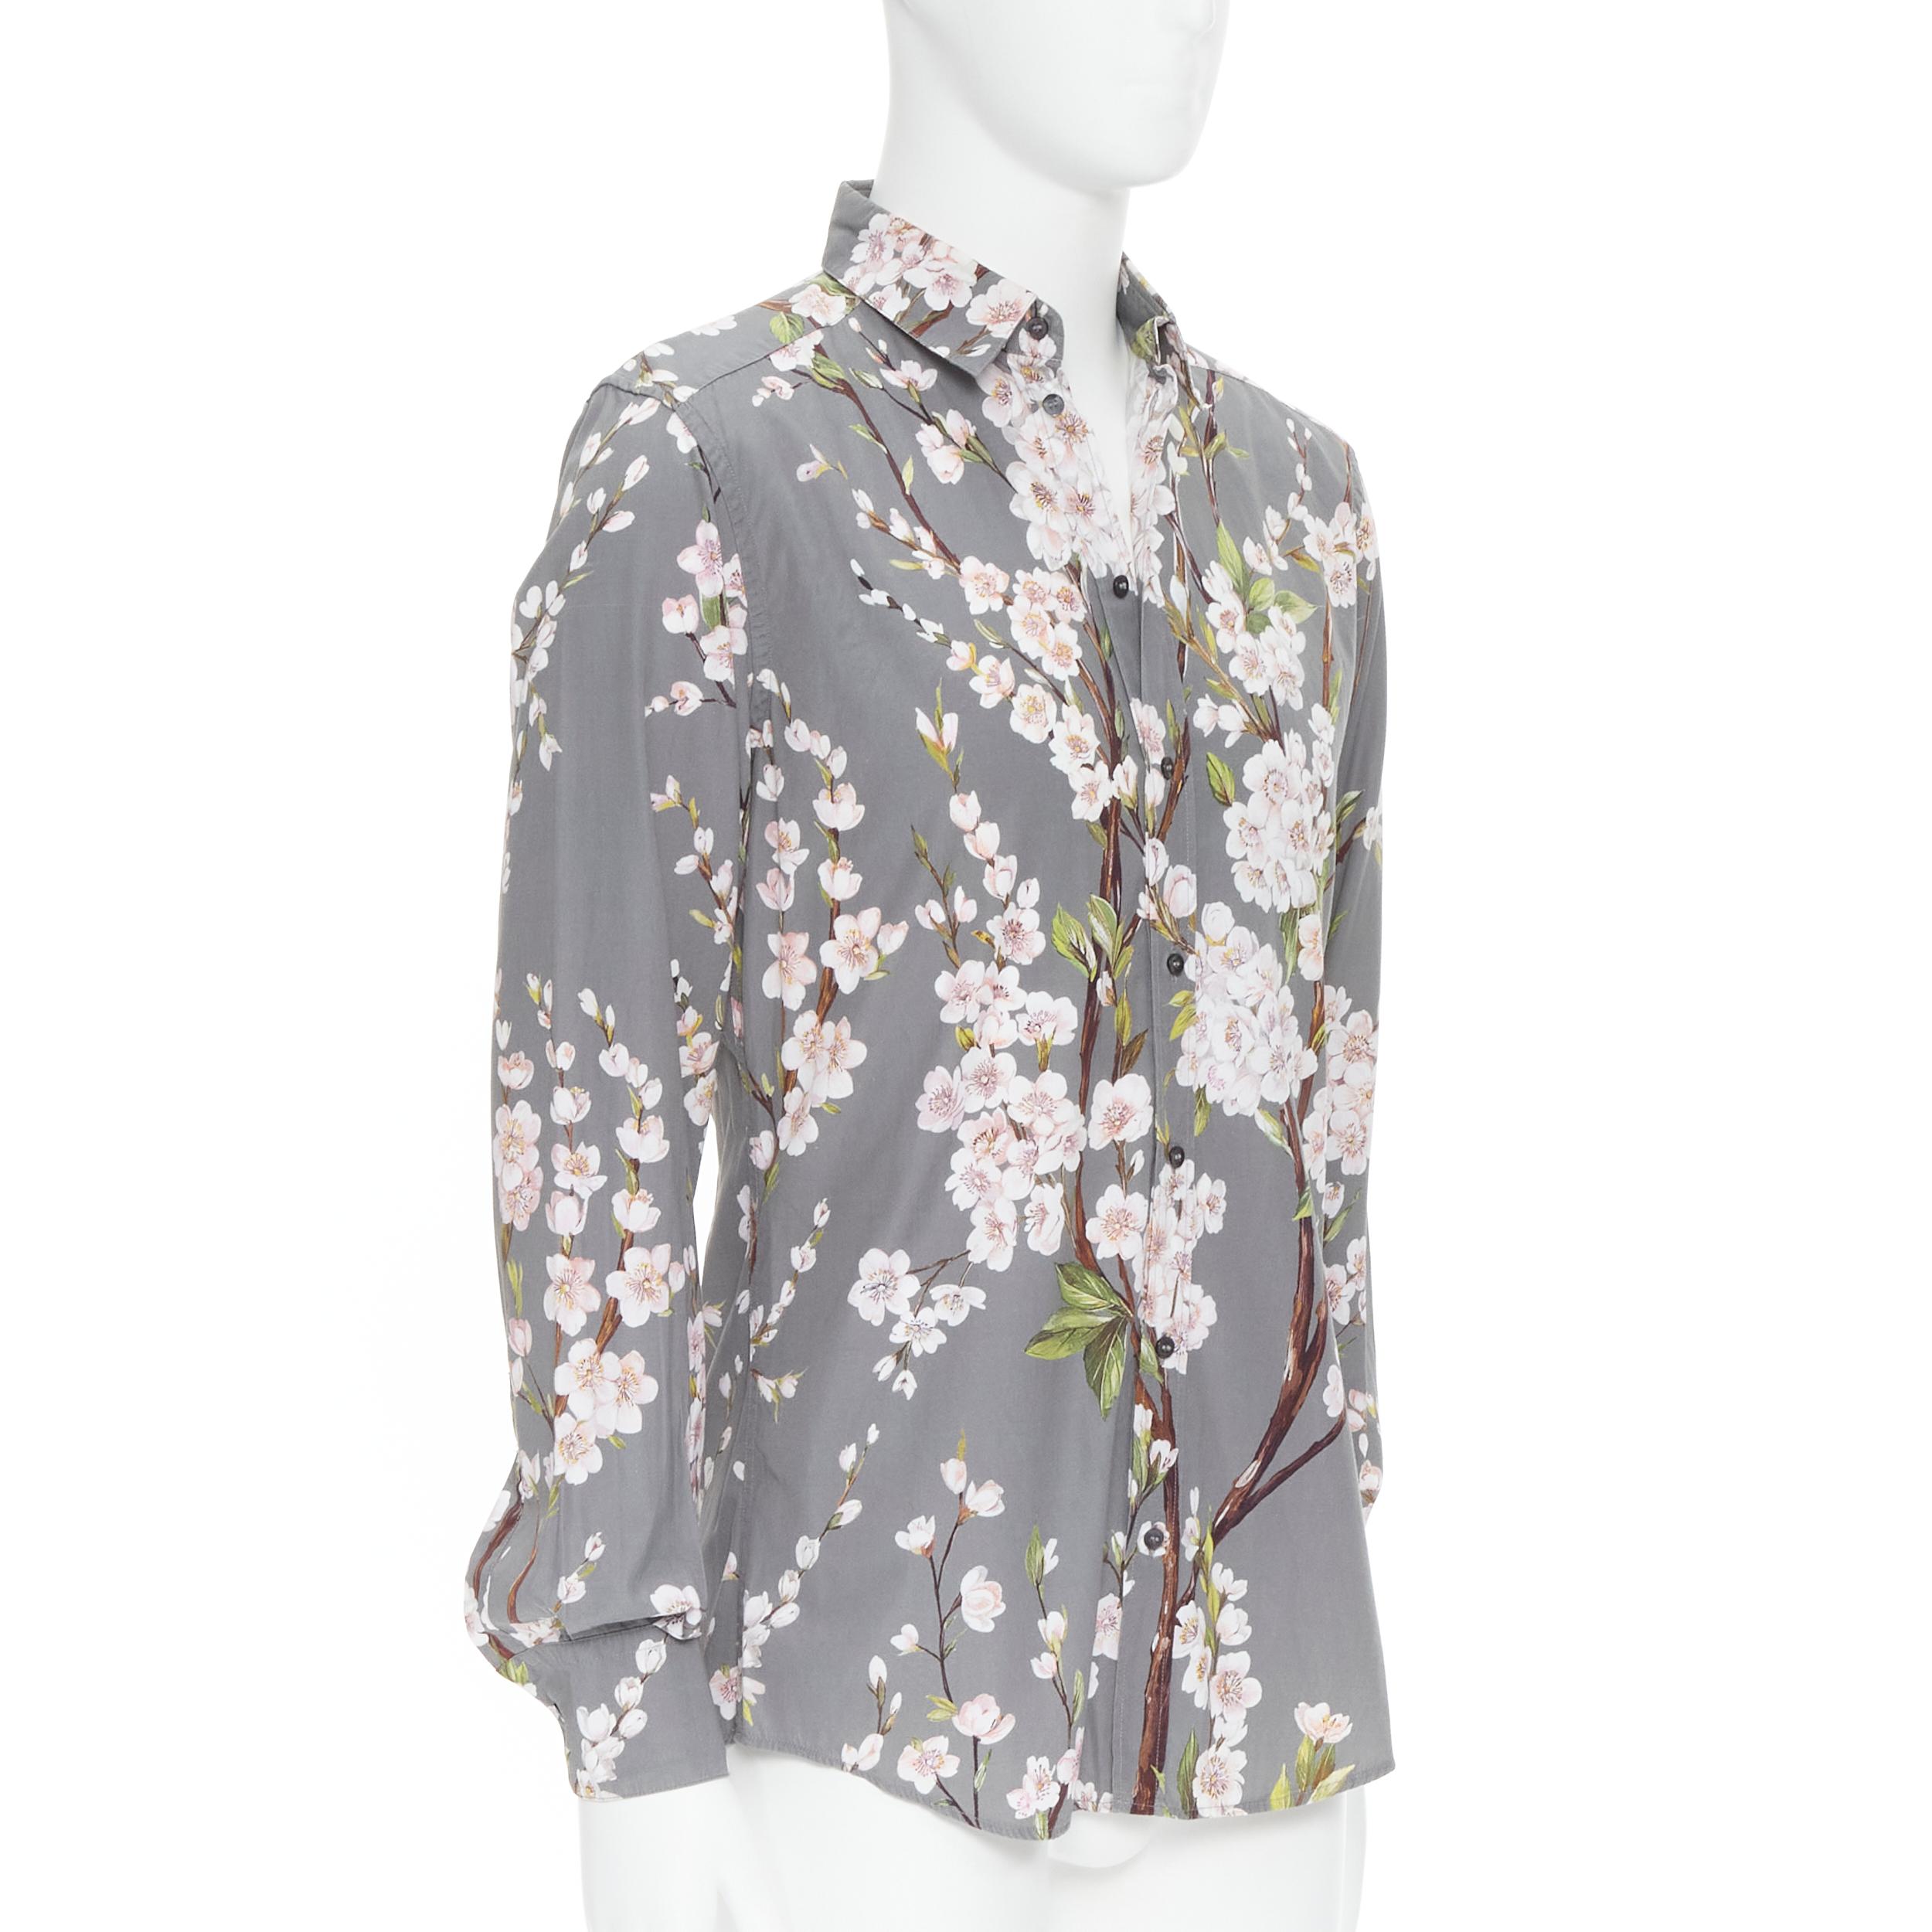 cherry blossom shirt mens